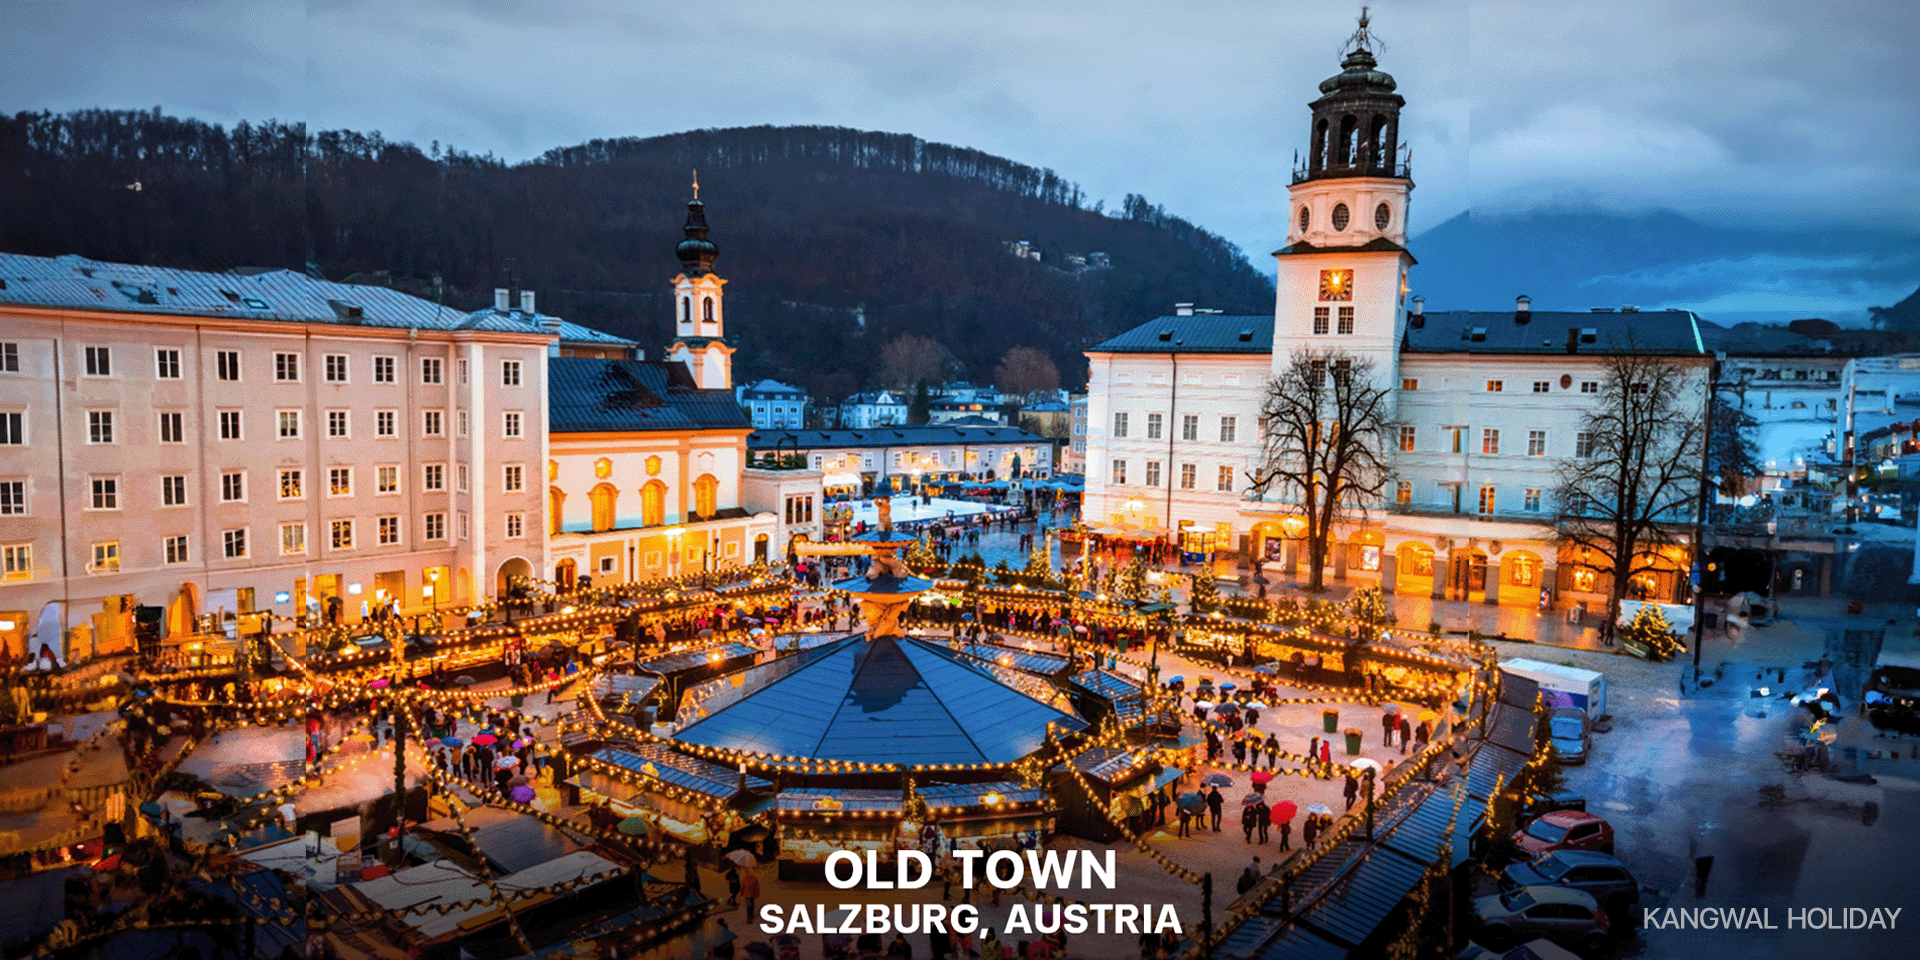 Old Town: Salzburg, Austria